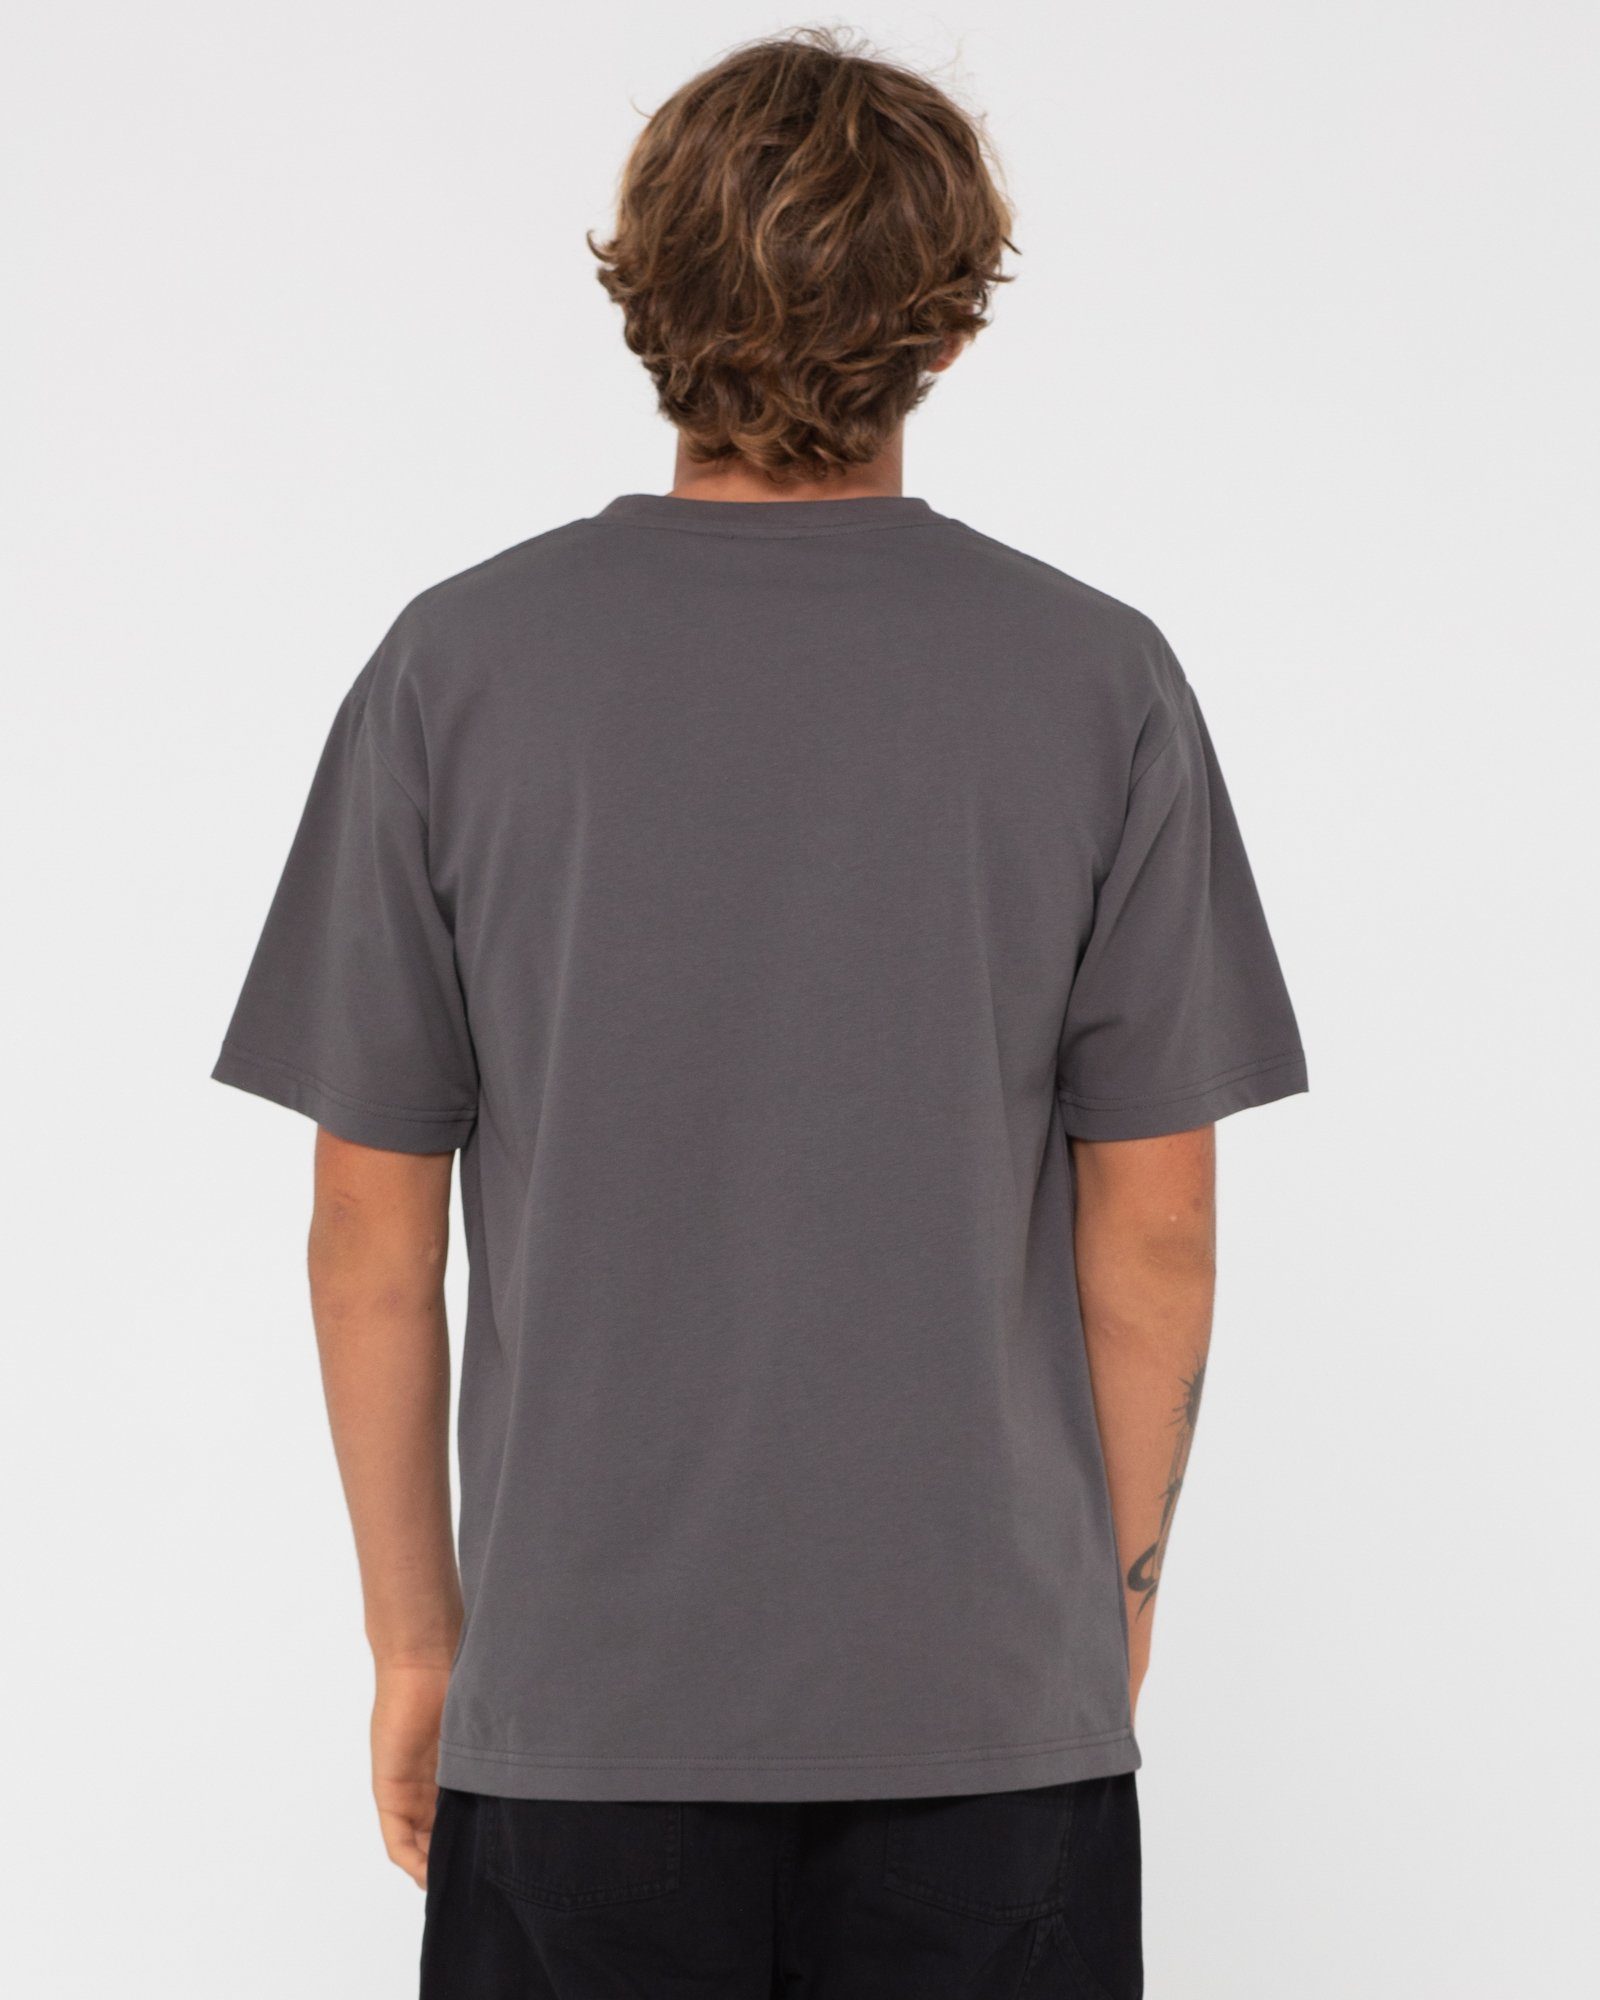 TEE Coal S/S Rusty T-Shirt BLANK DELUXE